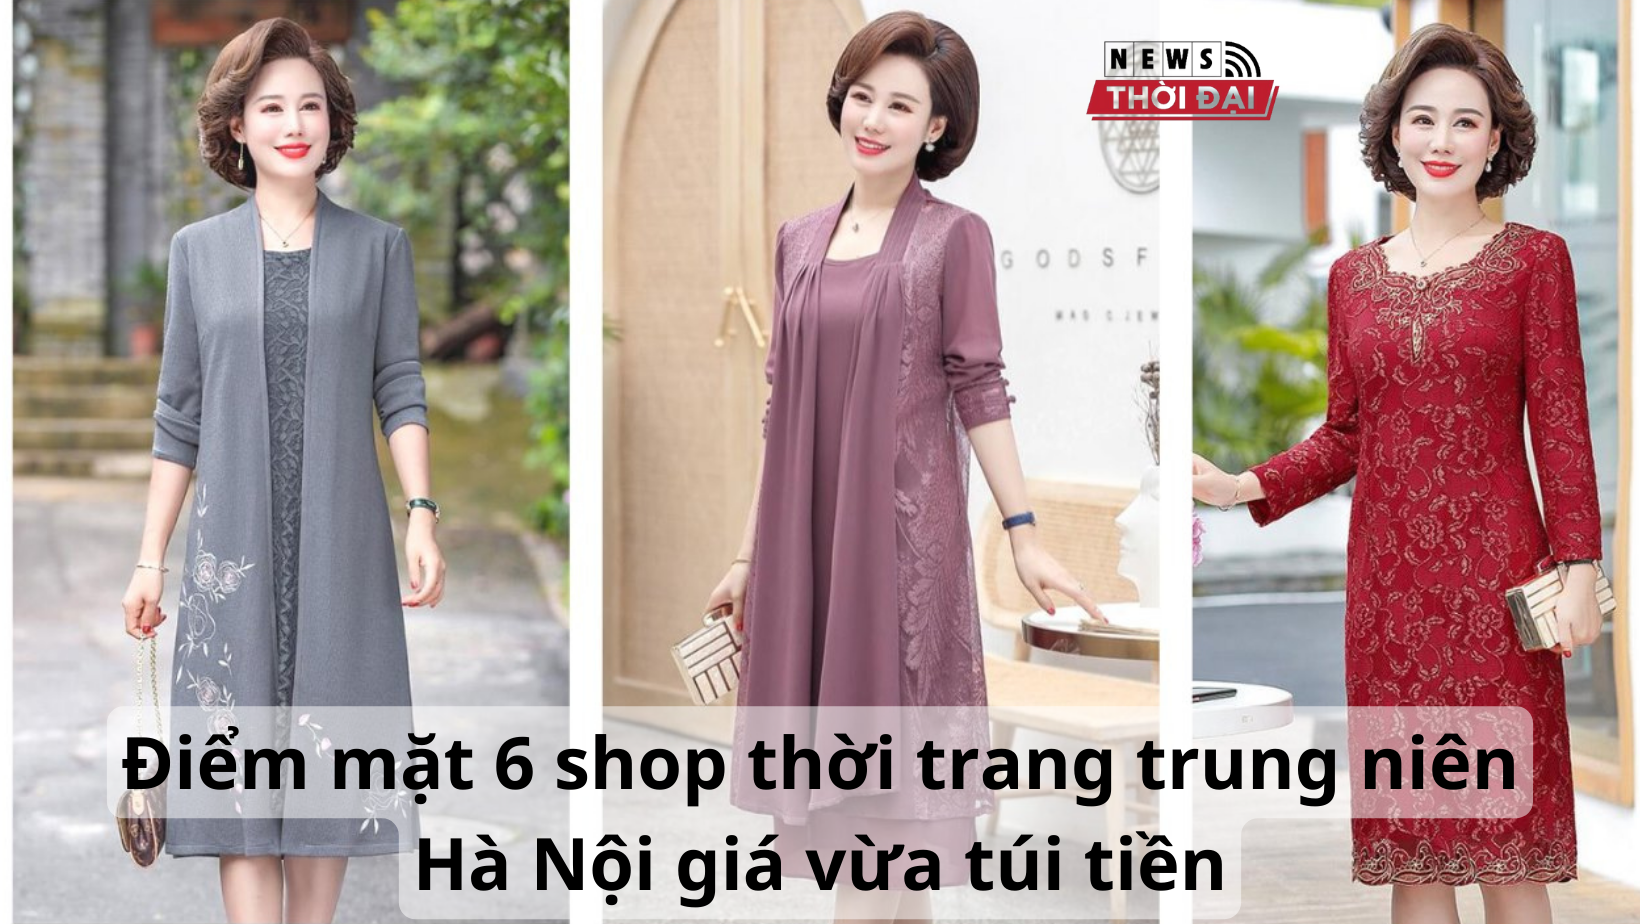 Điểm mặt 5 shop thời trang trung niên Hà Nội giá vừa túi tiền